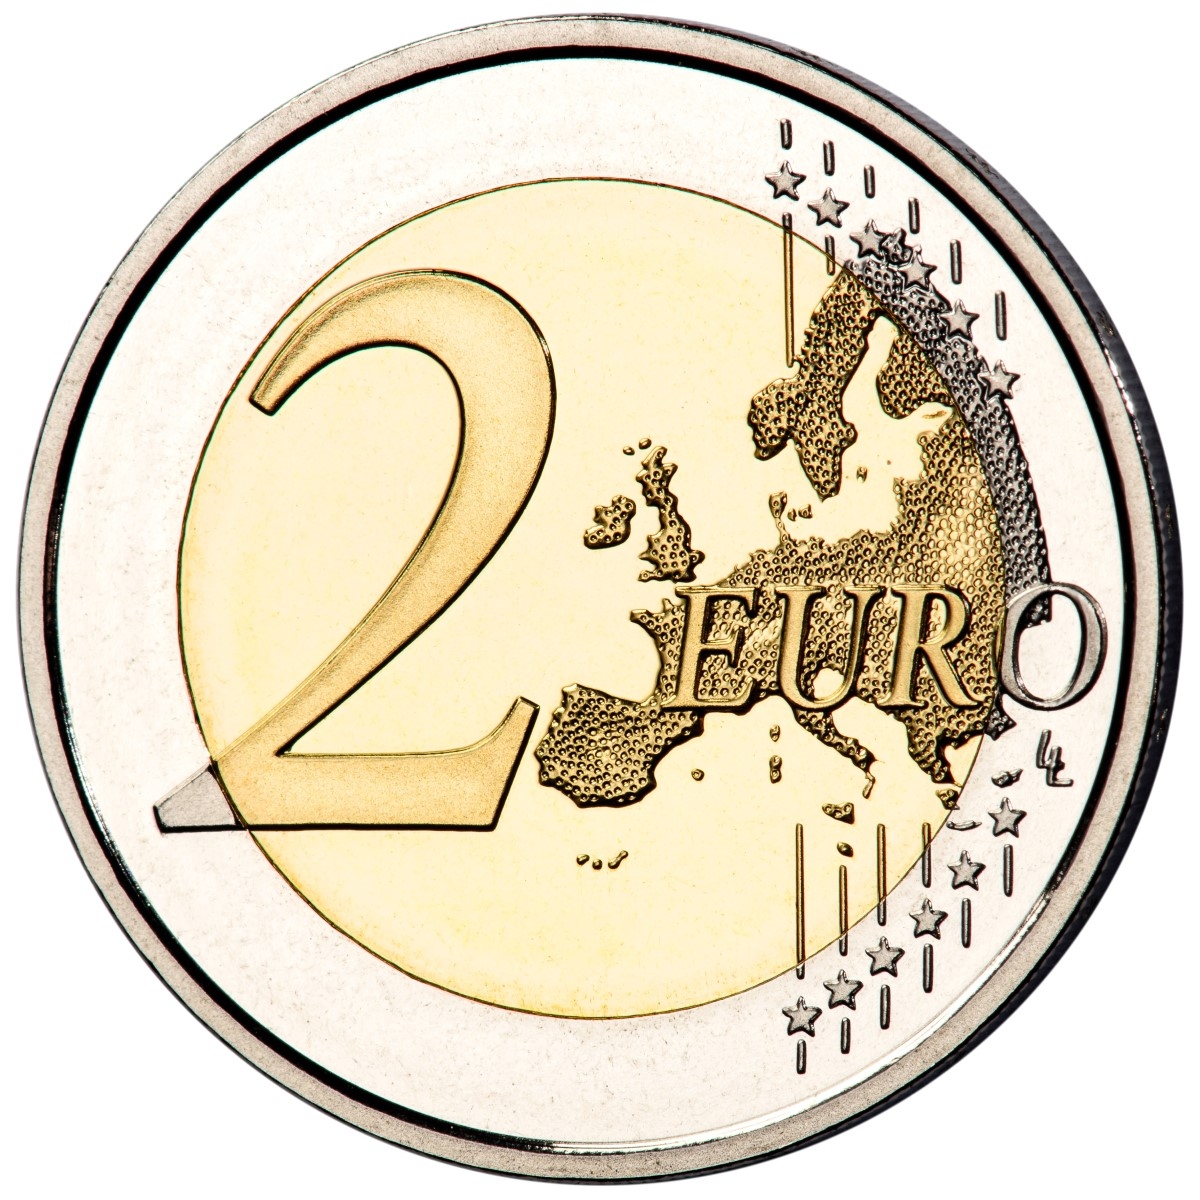 ES 2 Euro 2023 Real Casa de la Moneda logo